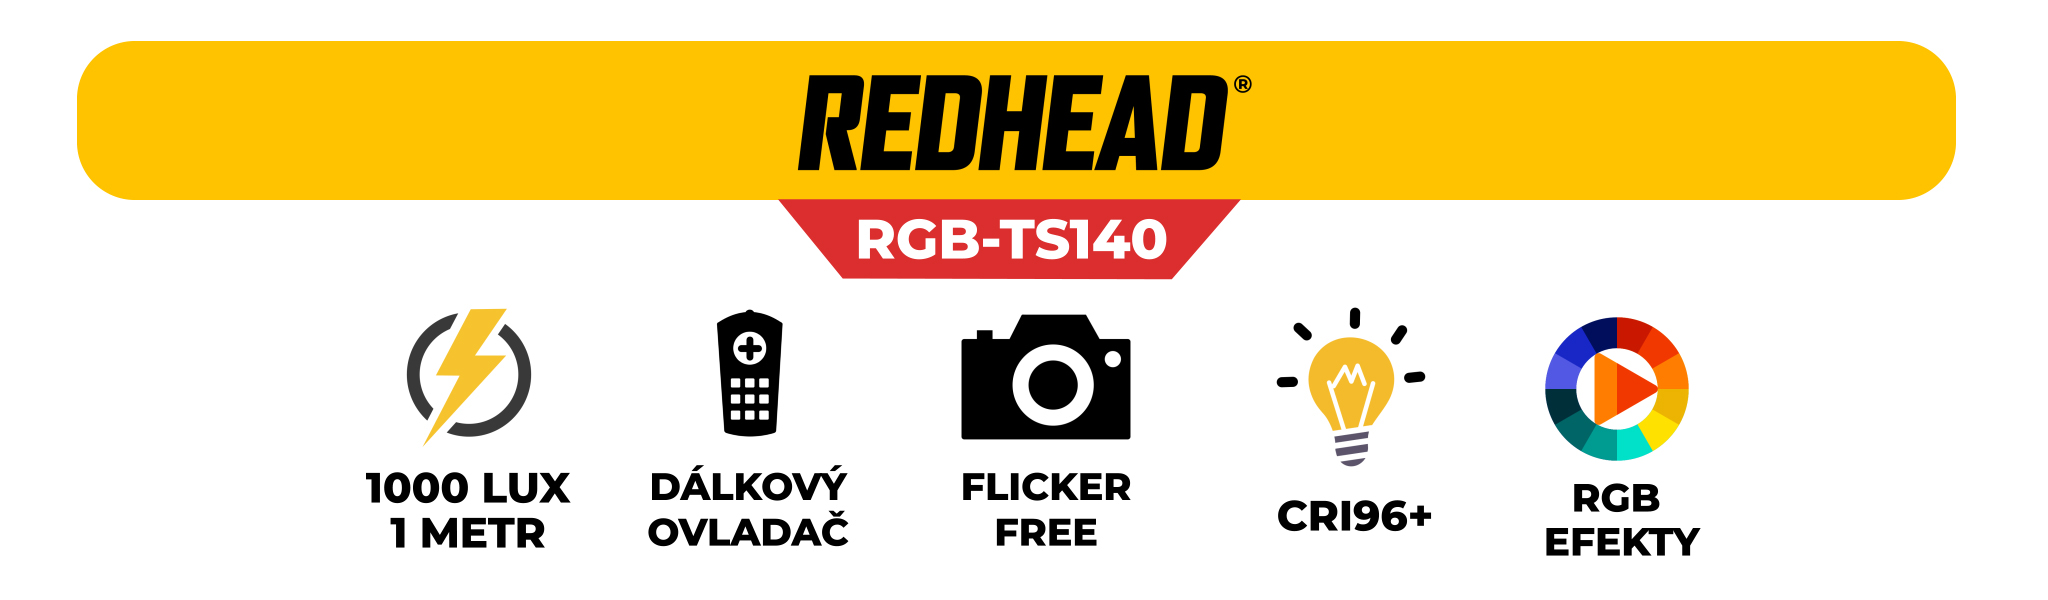 redhead-rgb-ts140